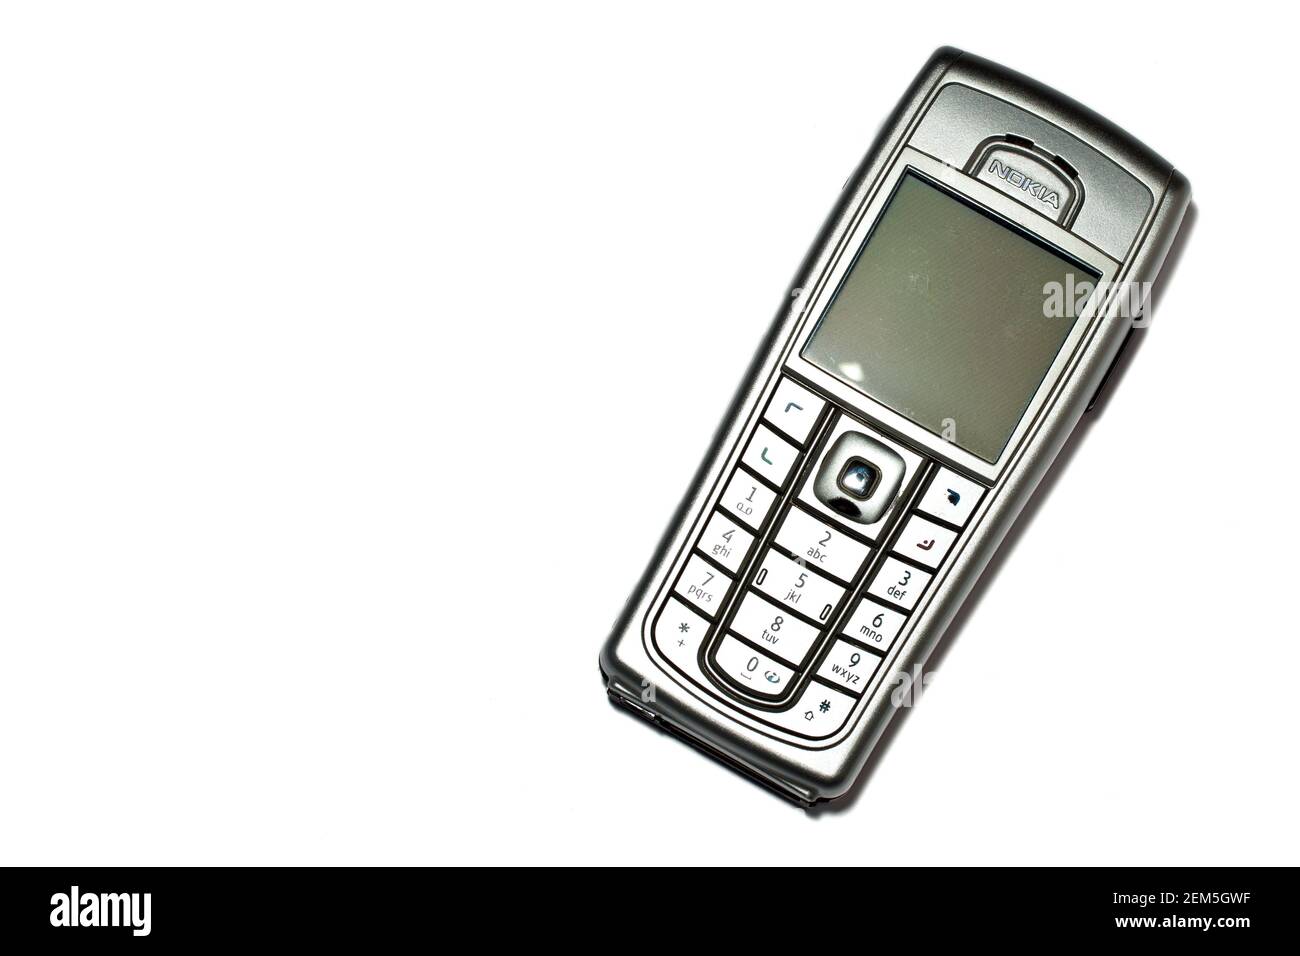 Nokia 6230i, un telefono cellulare a caramelle classico e più venduto dei primi anni 2000. Foto Stock